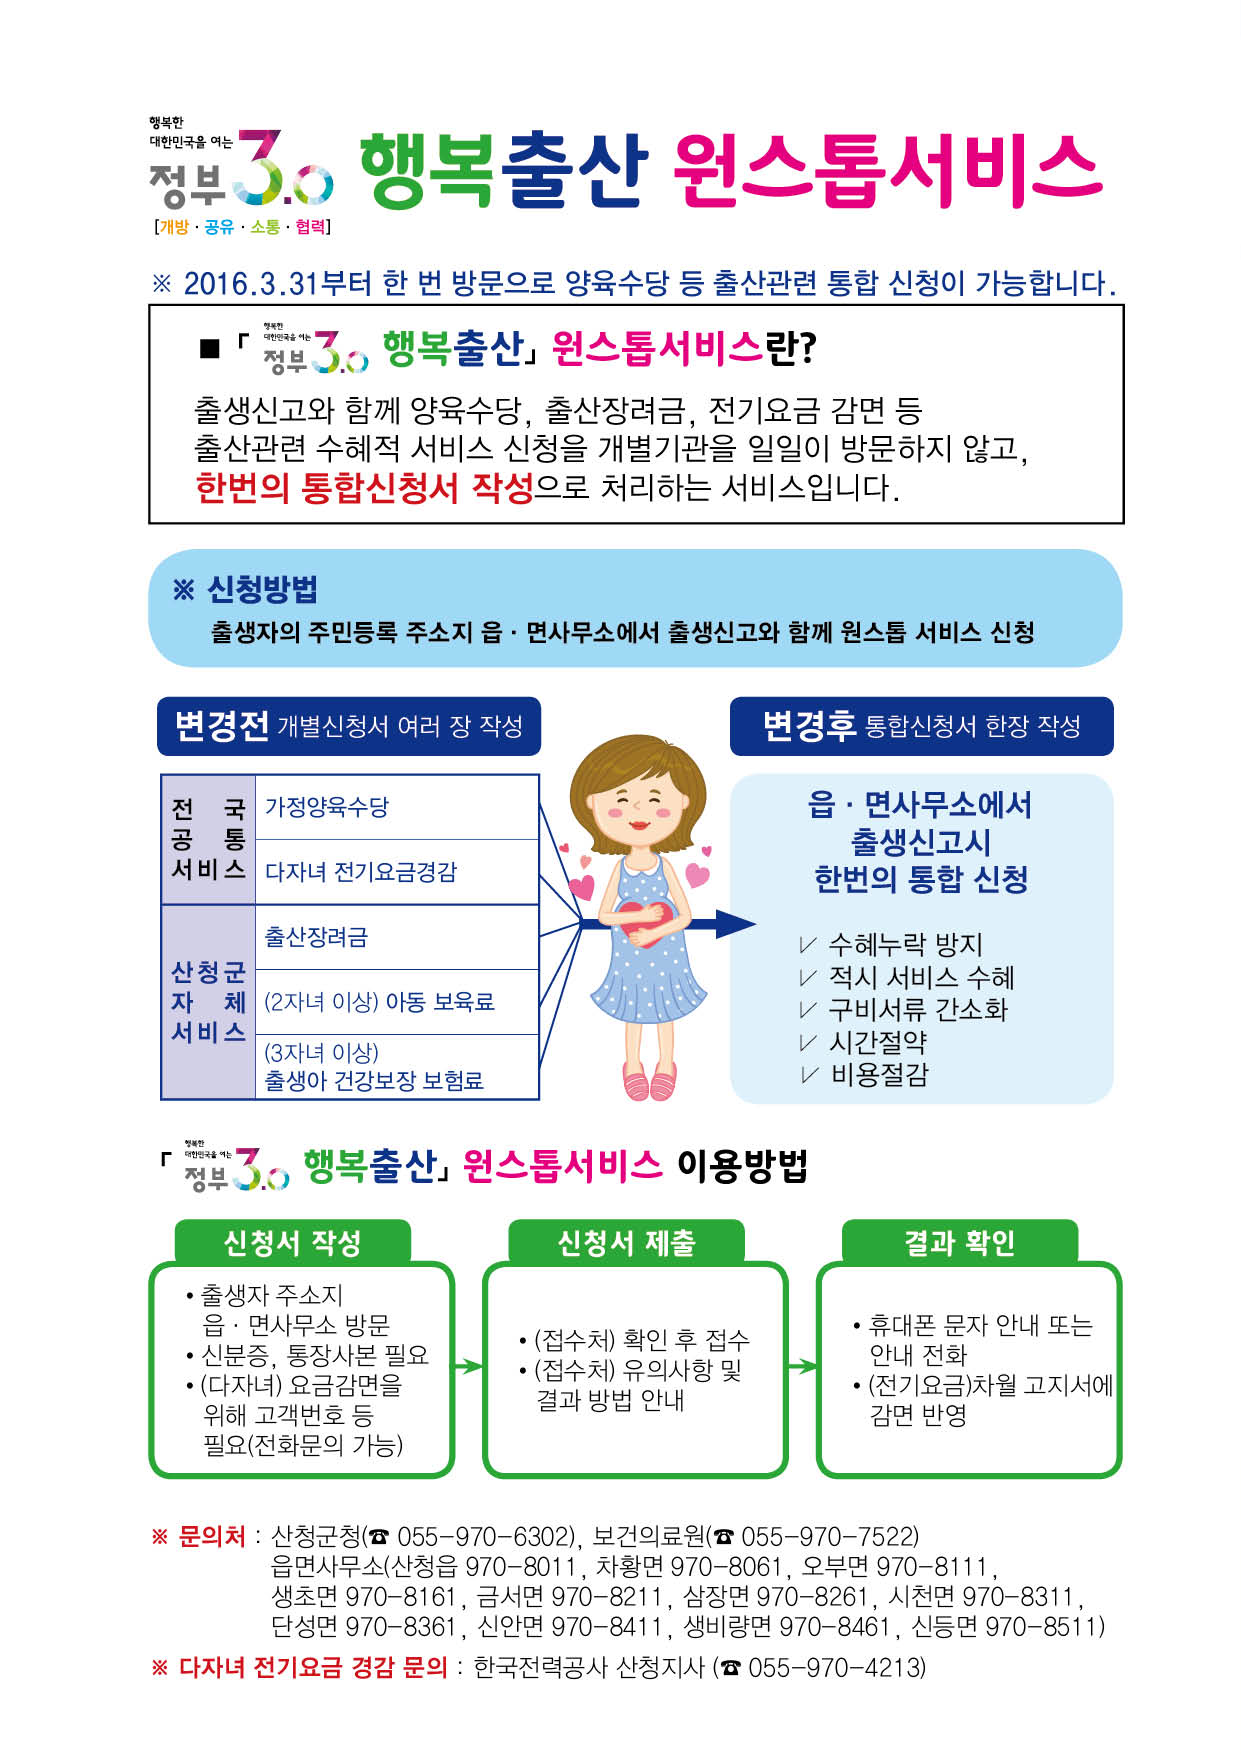 「행복출산 원스톱서비스」시행에 따른  홍보 2